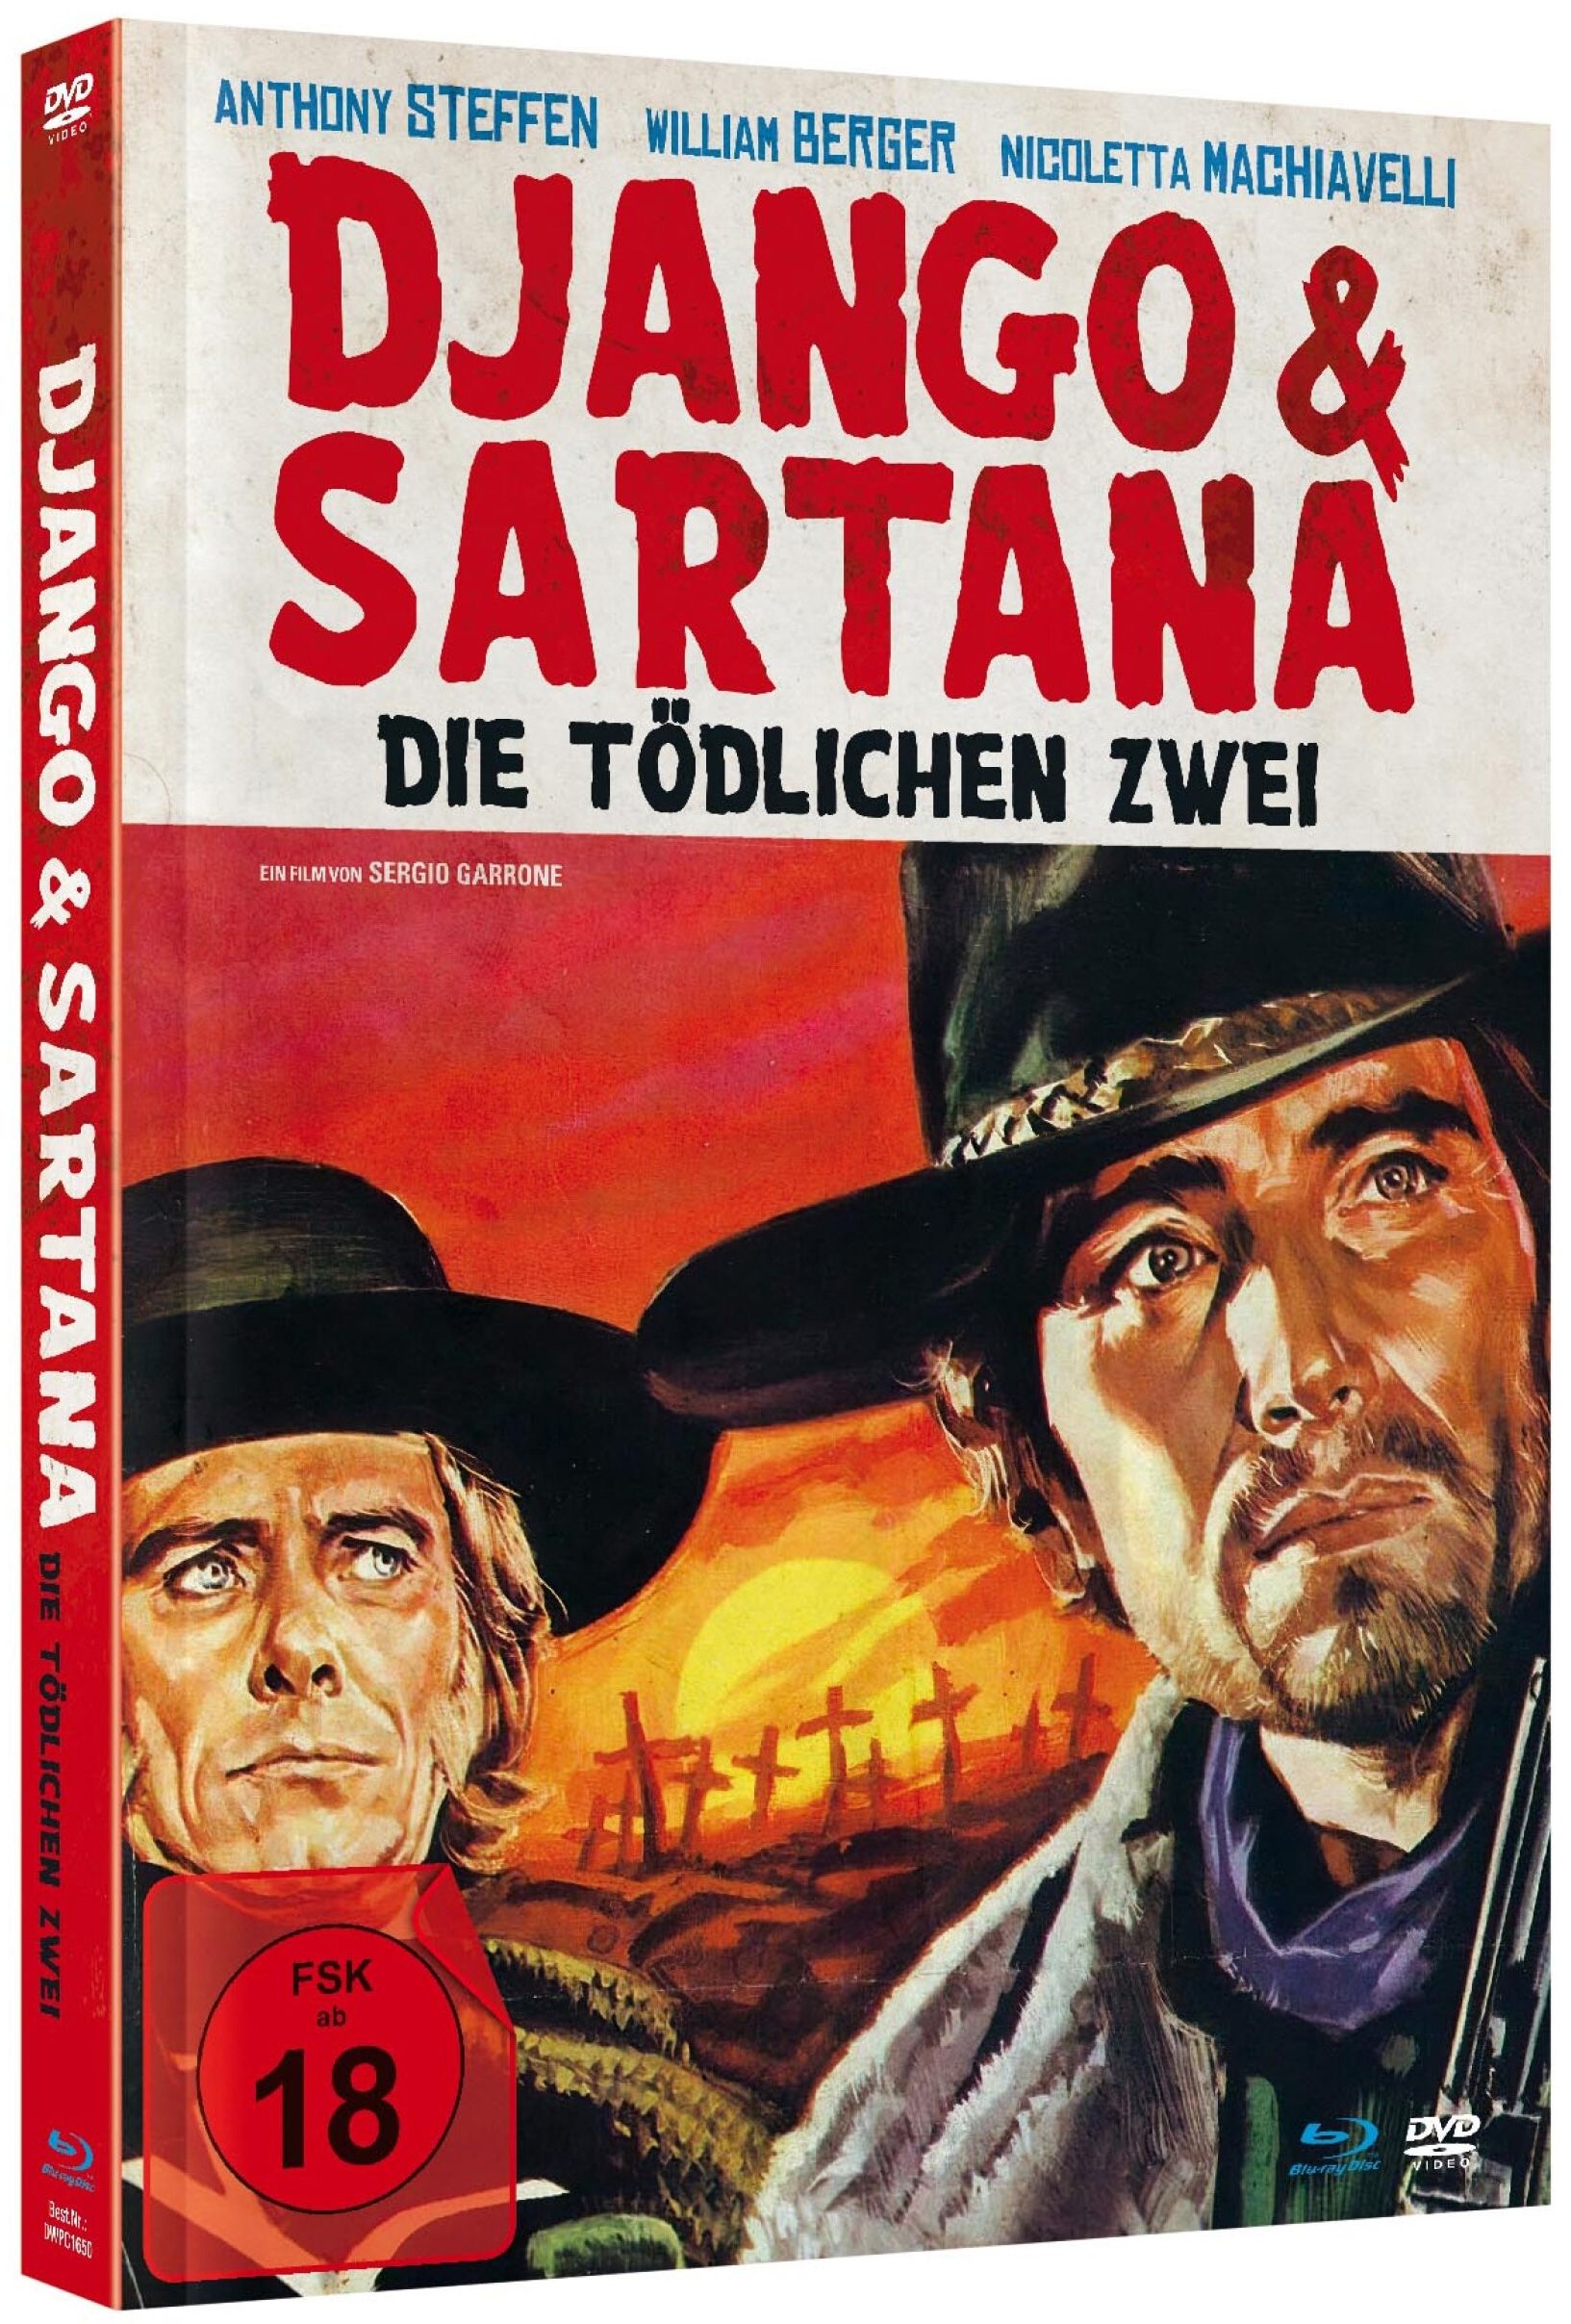 Django & Sartana - Die tödlichen Zwei (Lim. Uncut Mediabook) (DVD + BLURAY)